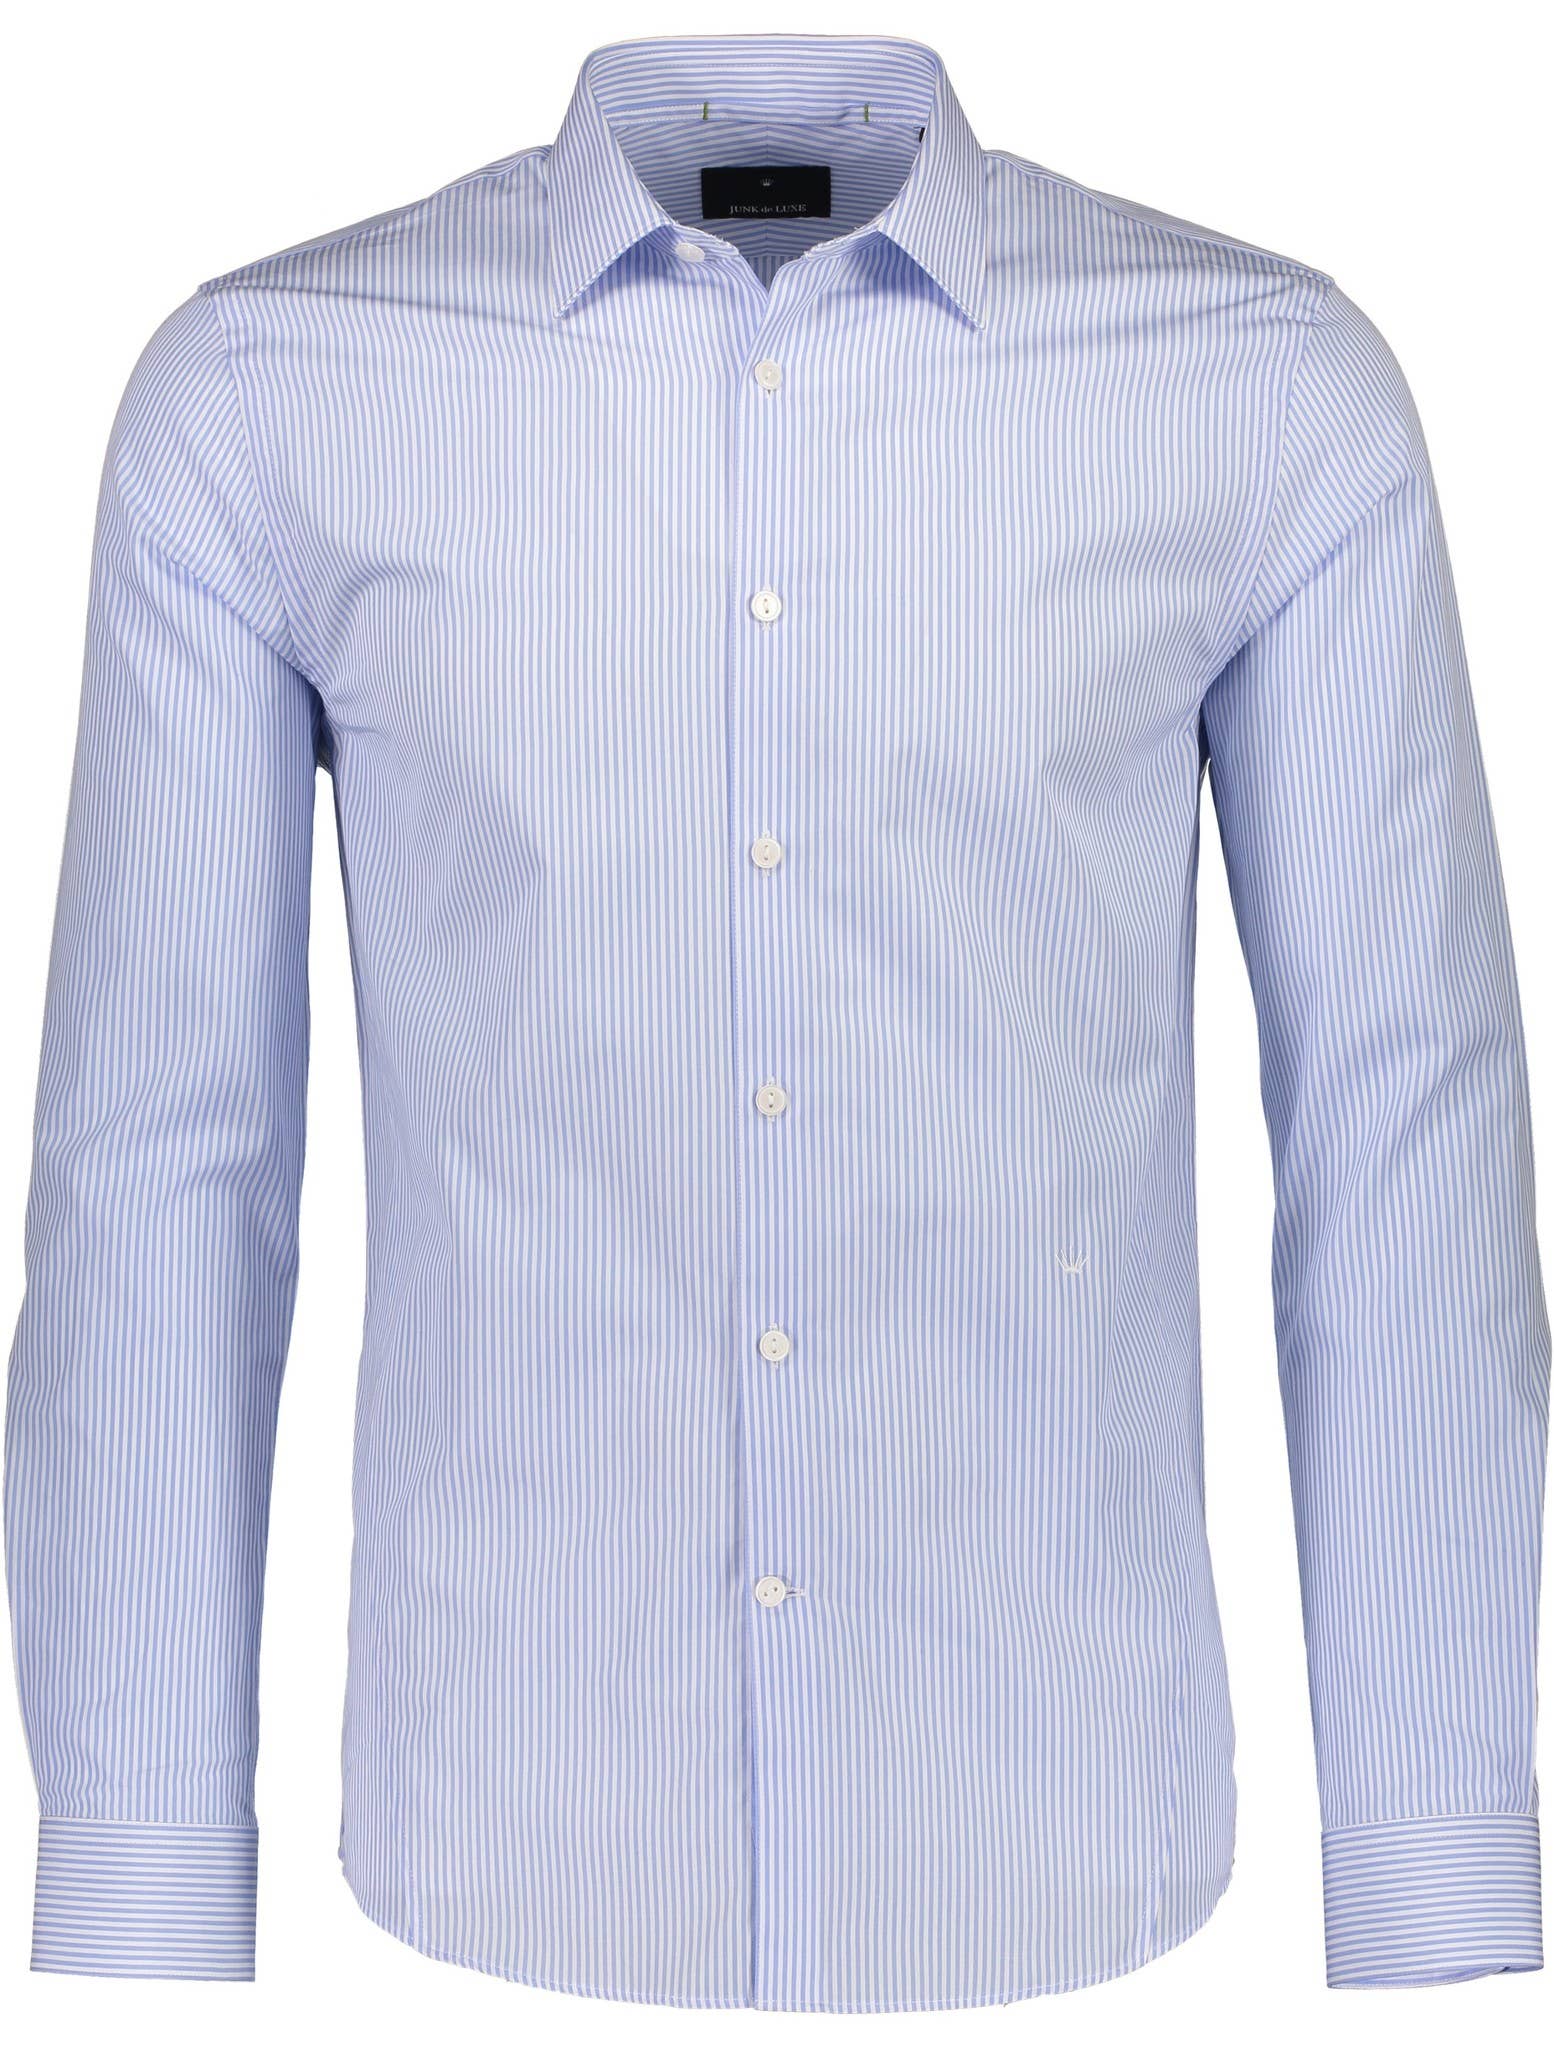 Stripe Cotton Dress Shirt L/S Style: 60-20544